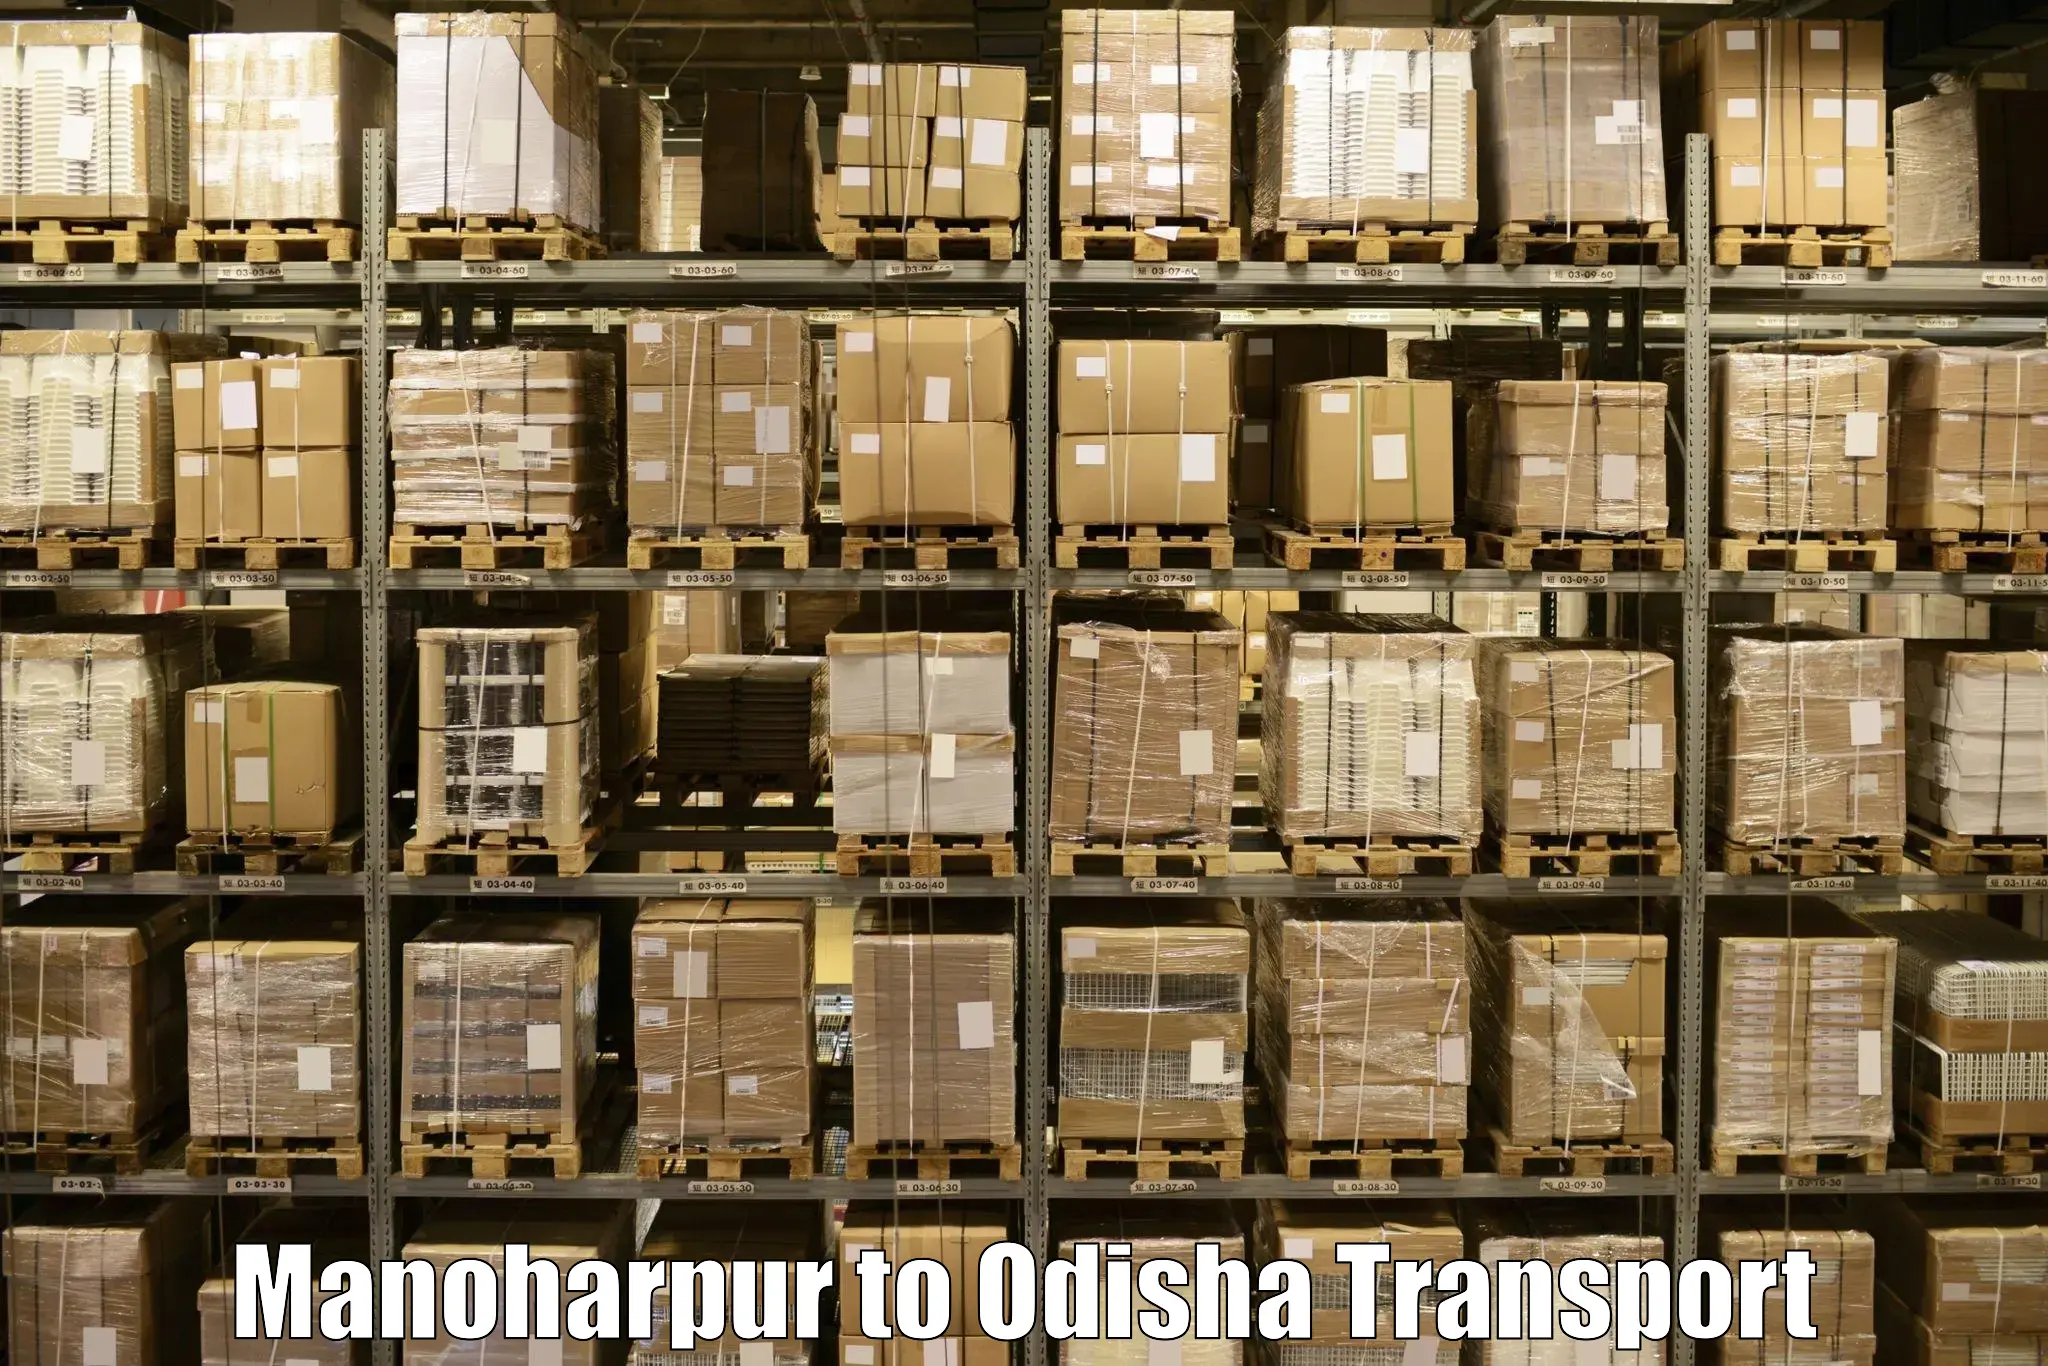 Nearest transport service Manoharpur to Balijhari